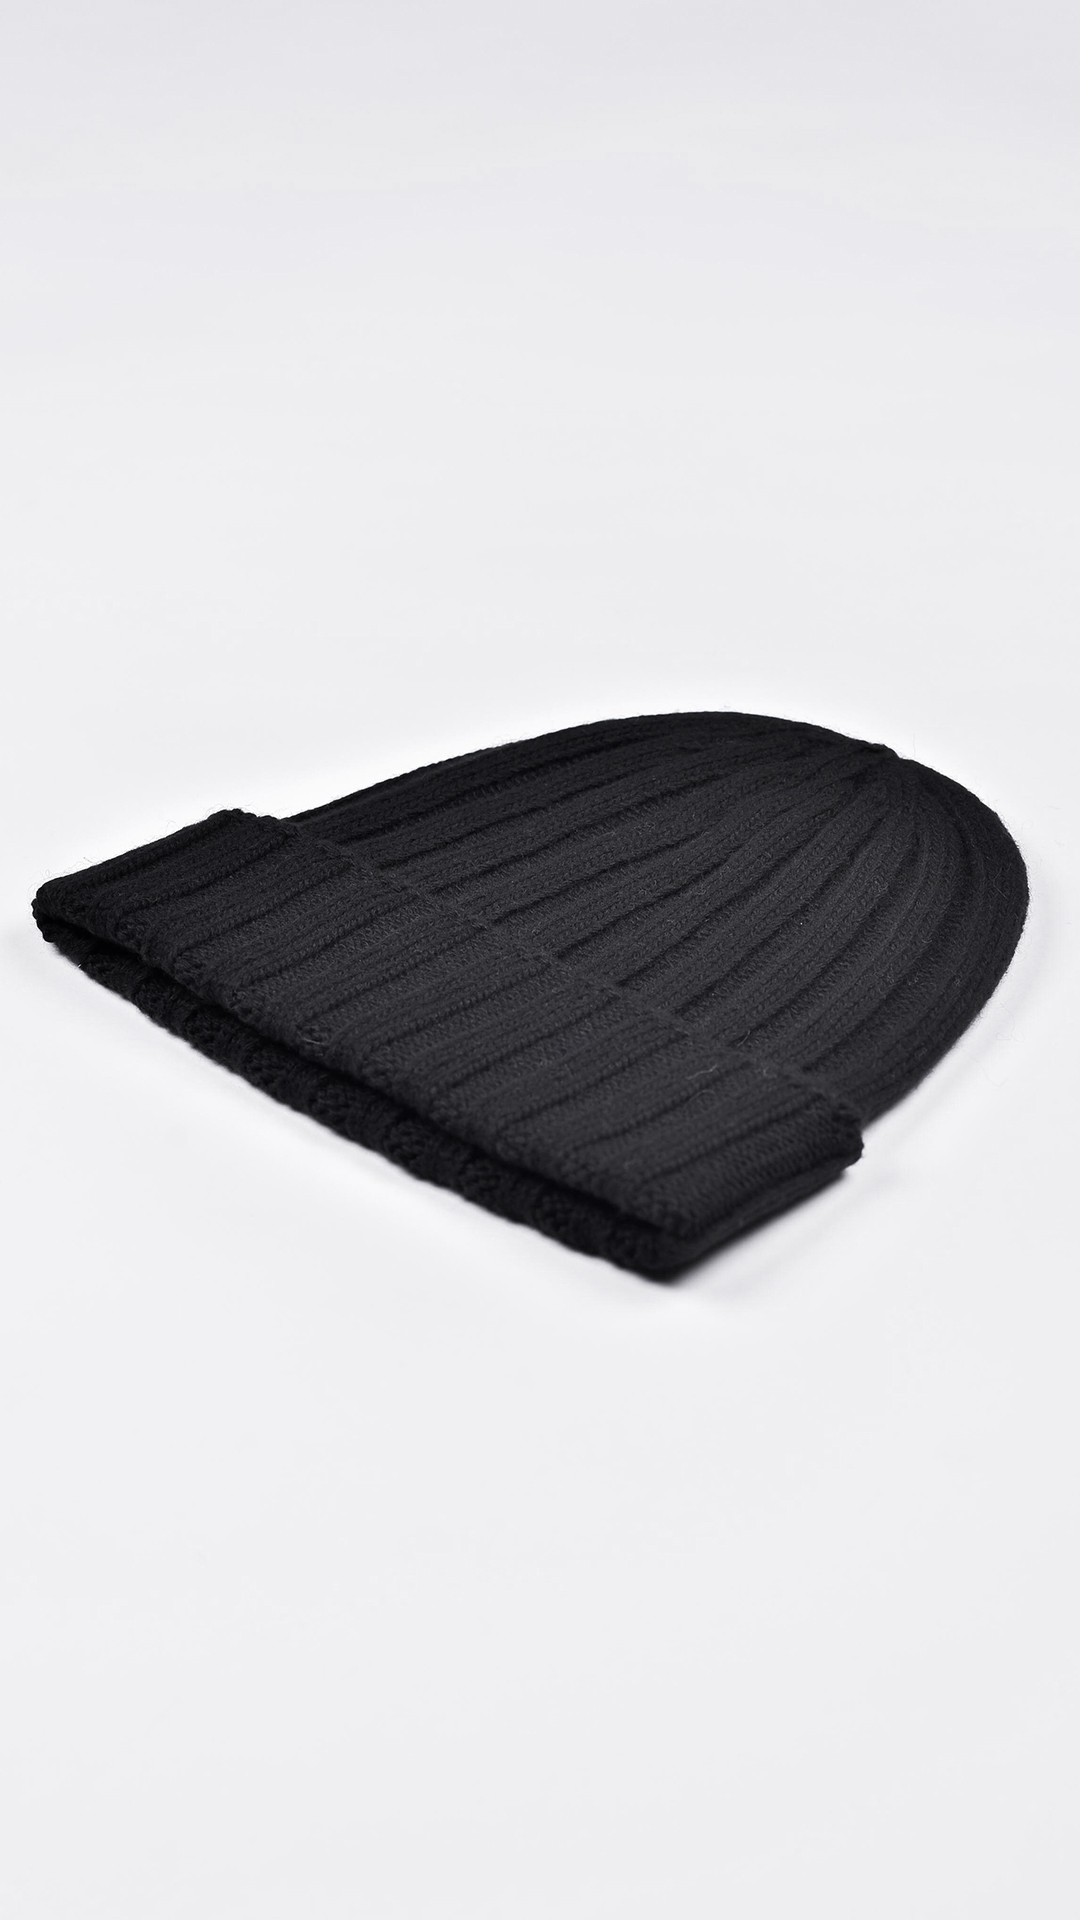 Wallisdario nero 2 1stAmerican cappellino lana e cashmere Made in Italy da uomo - caldo berretto invernale a coste larghe